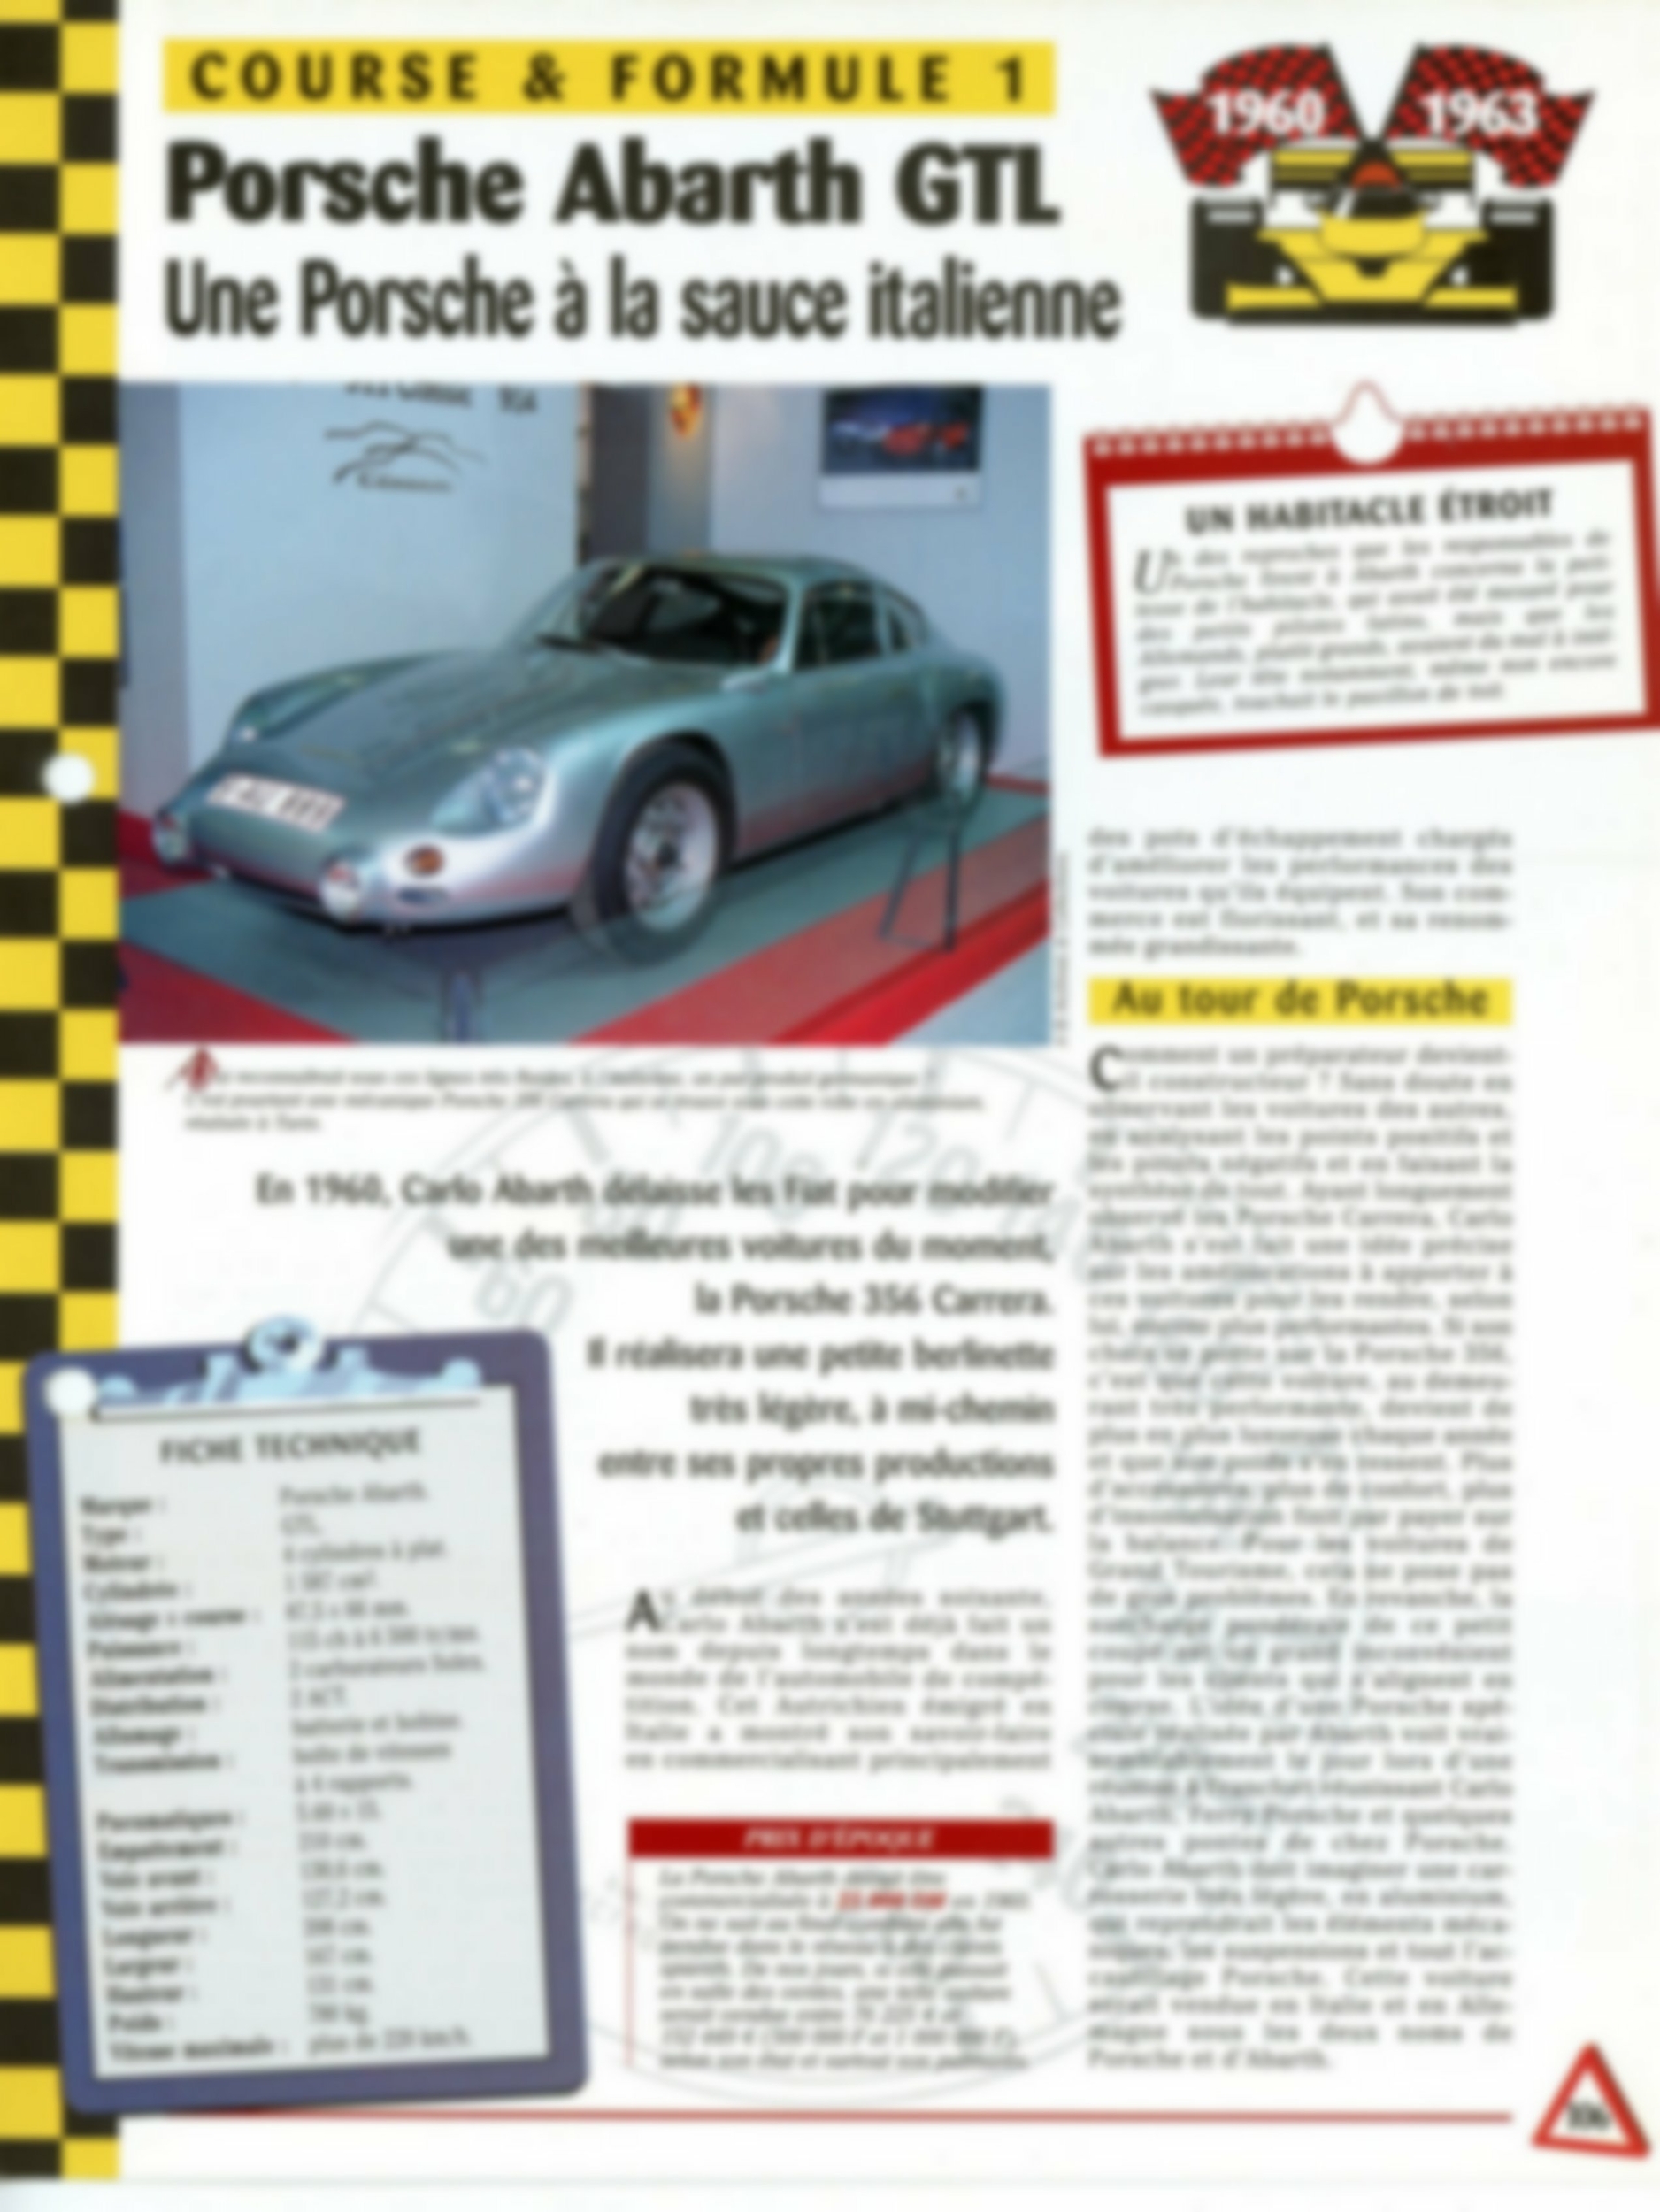 PORSCHE ABARTH GTL 1960-1963 - FICHE TECHNIQUE AUTO - COURSE & FORMULE 1